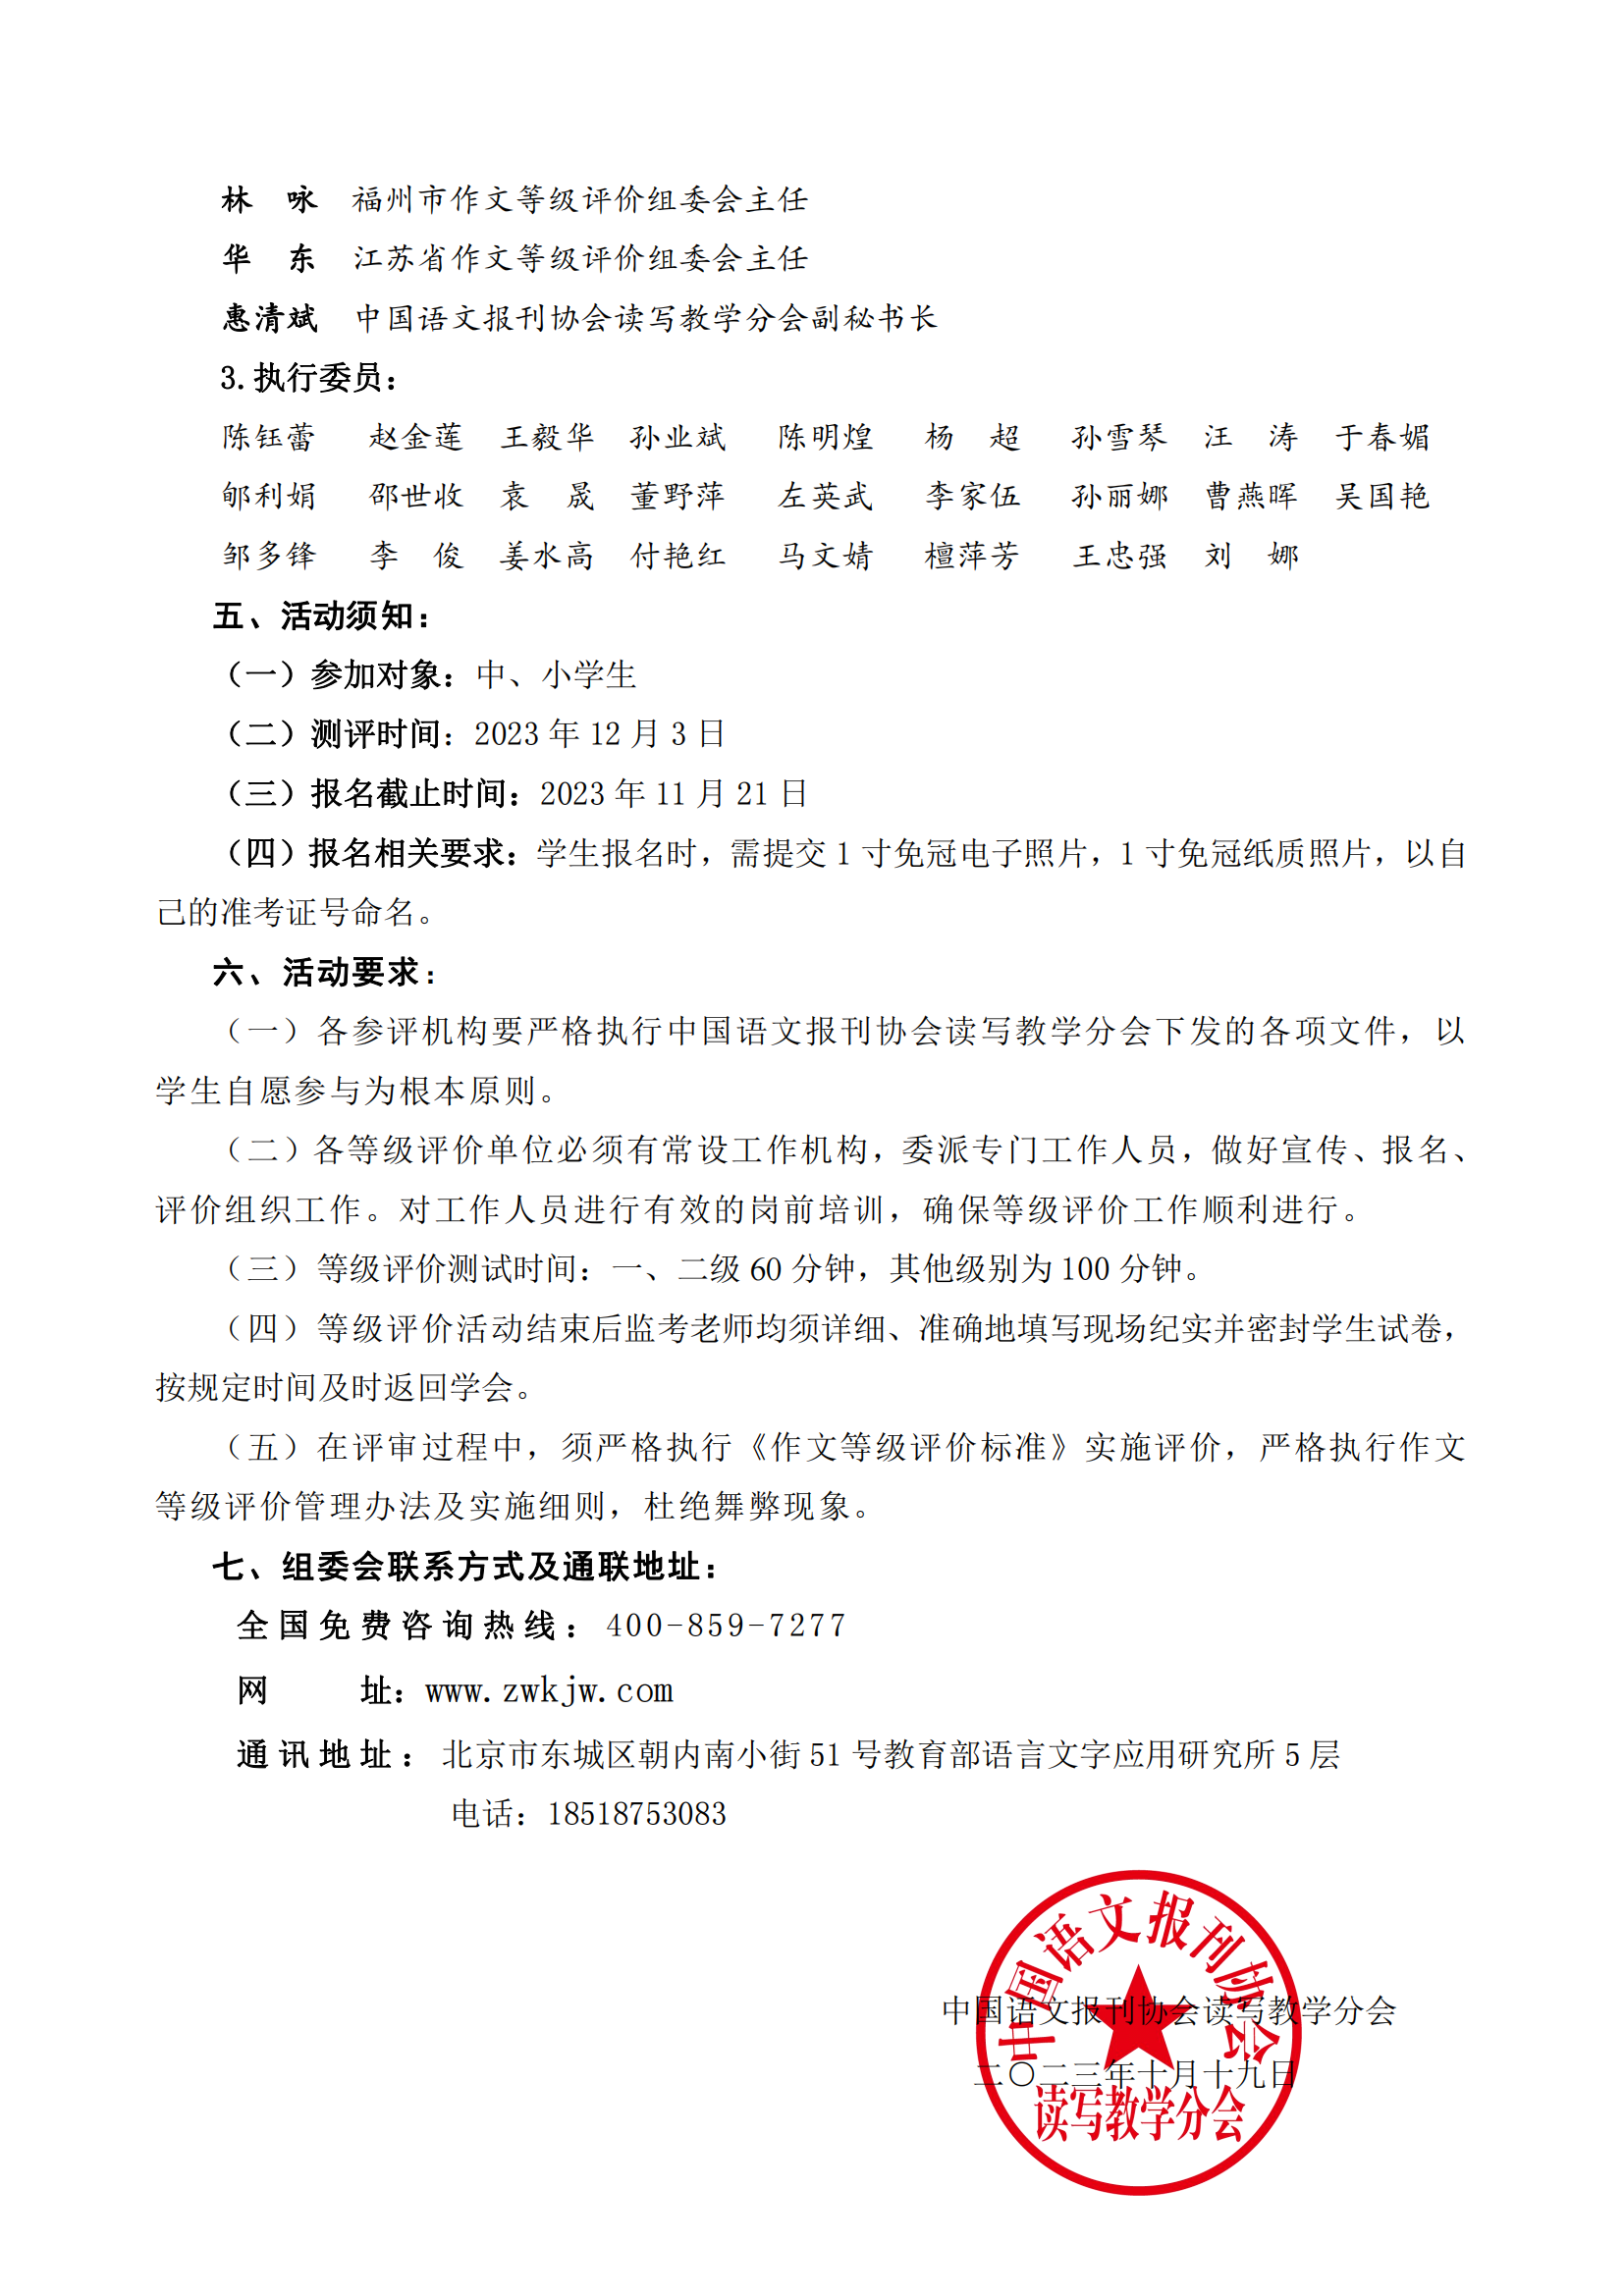 2023年中小学生汉语作文等级评价通知_02.png